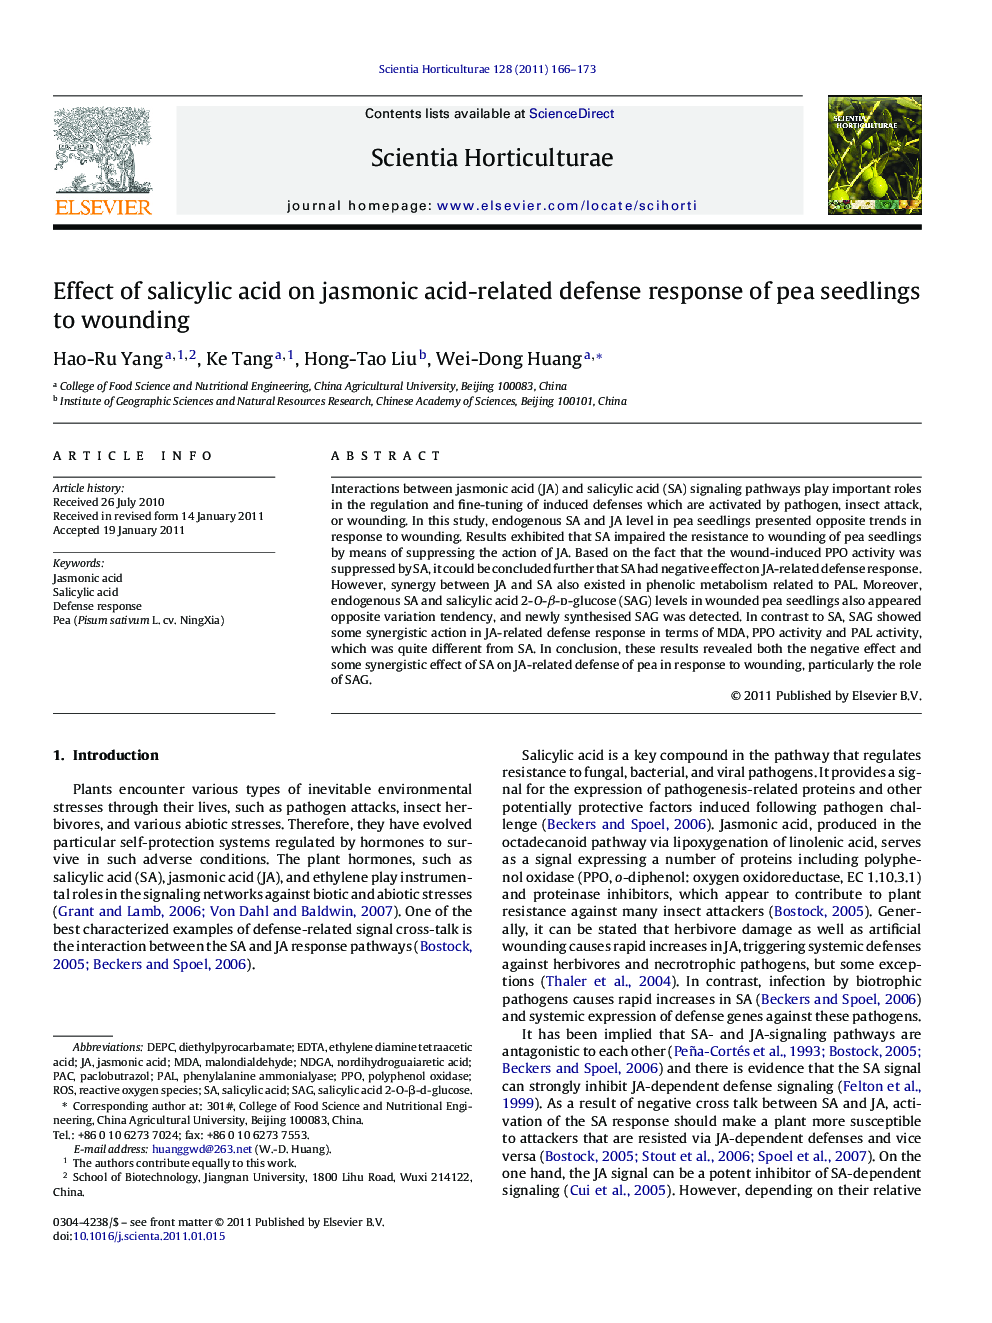 Effect of salicylic acid on jasmonic acid-related defense response of pea seedlings to wounding